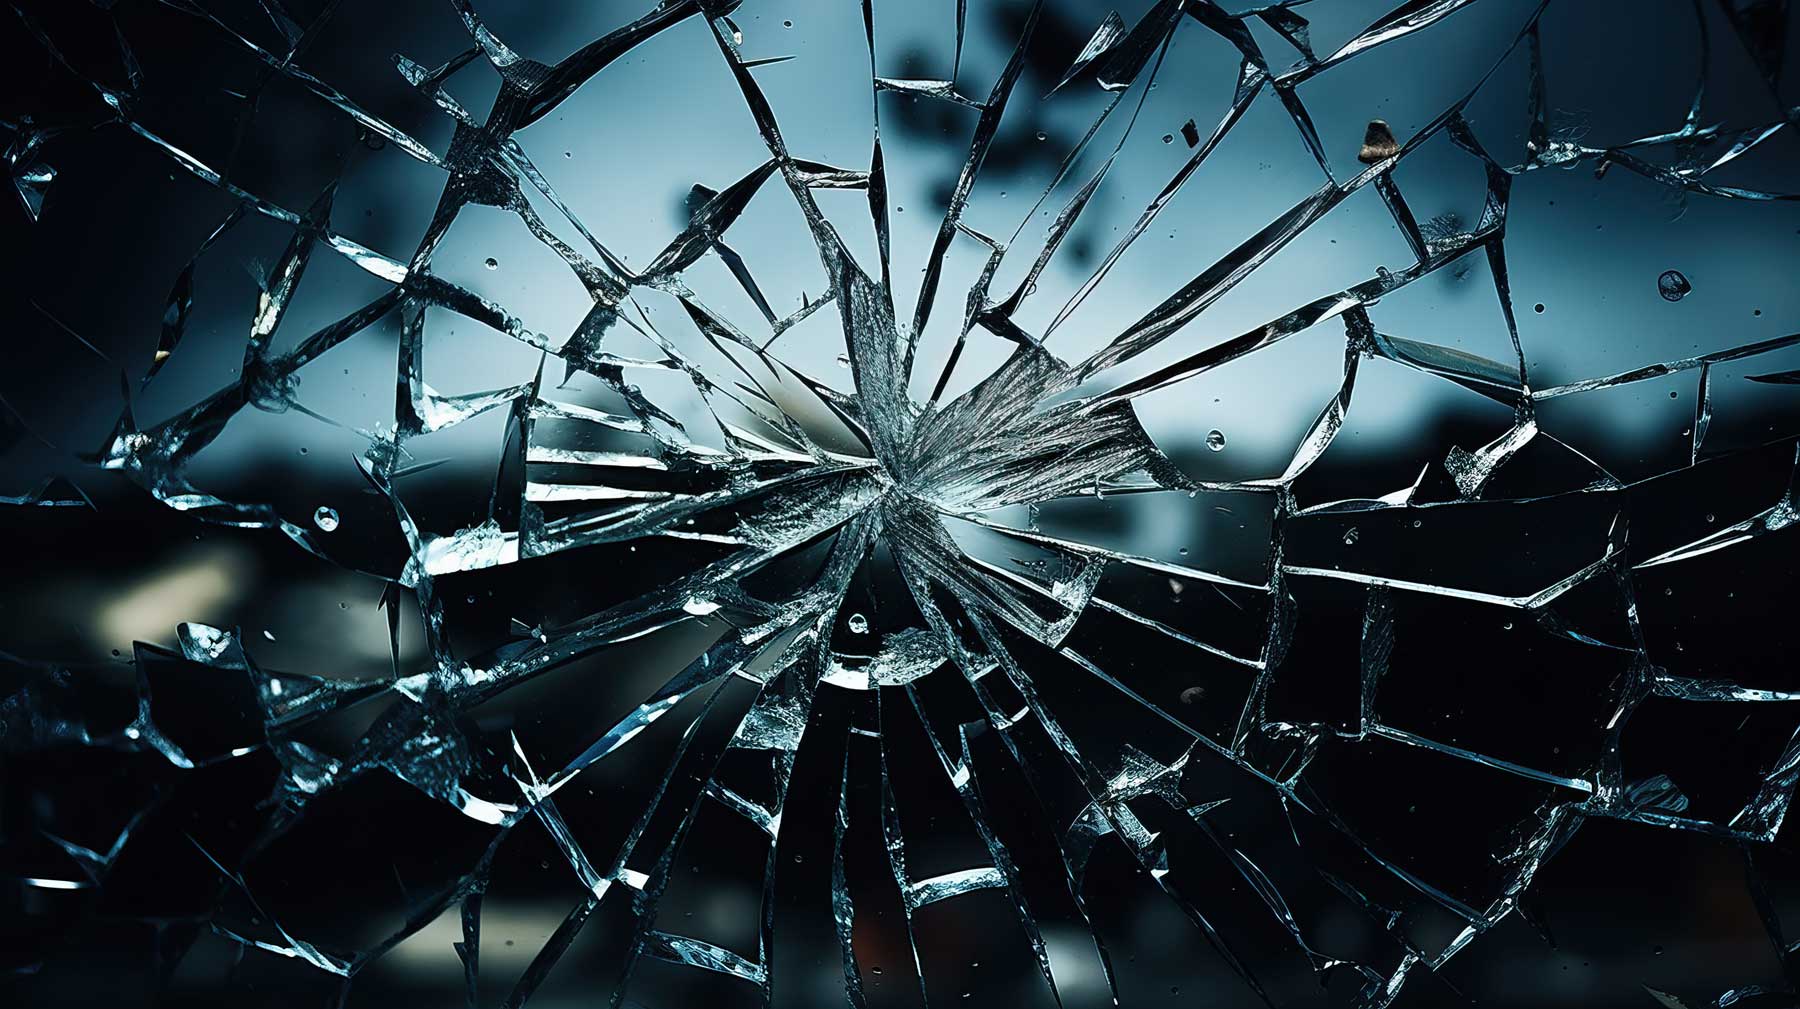 broken glass metaphor for a divorce